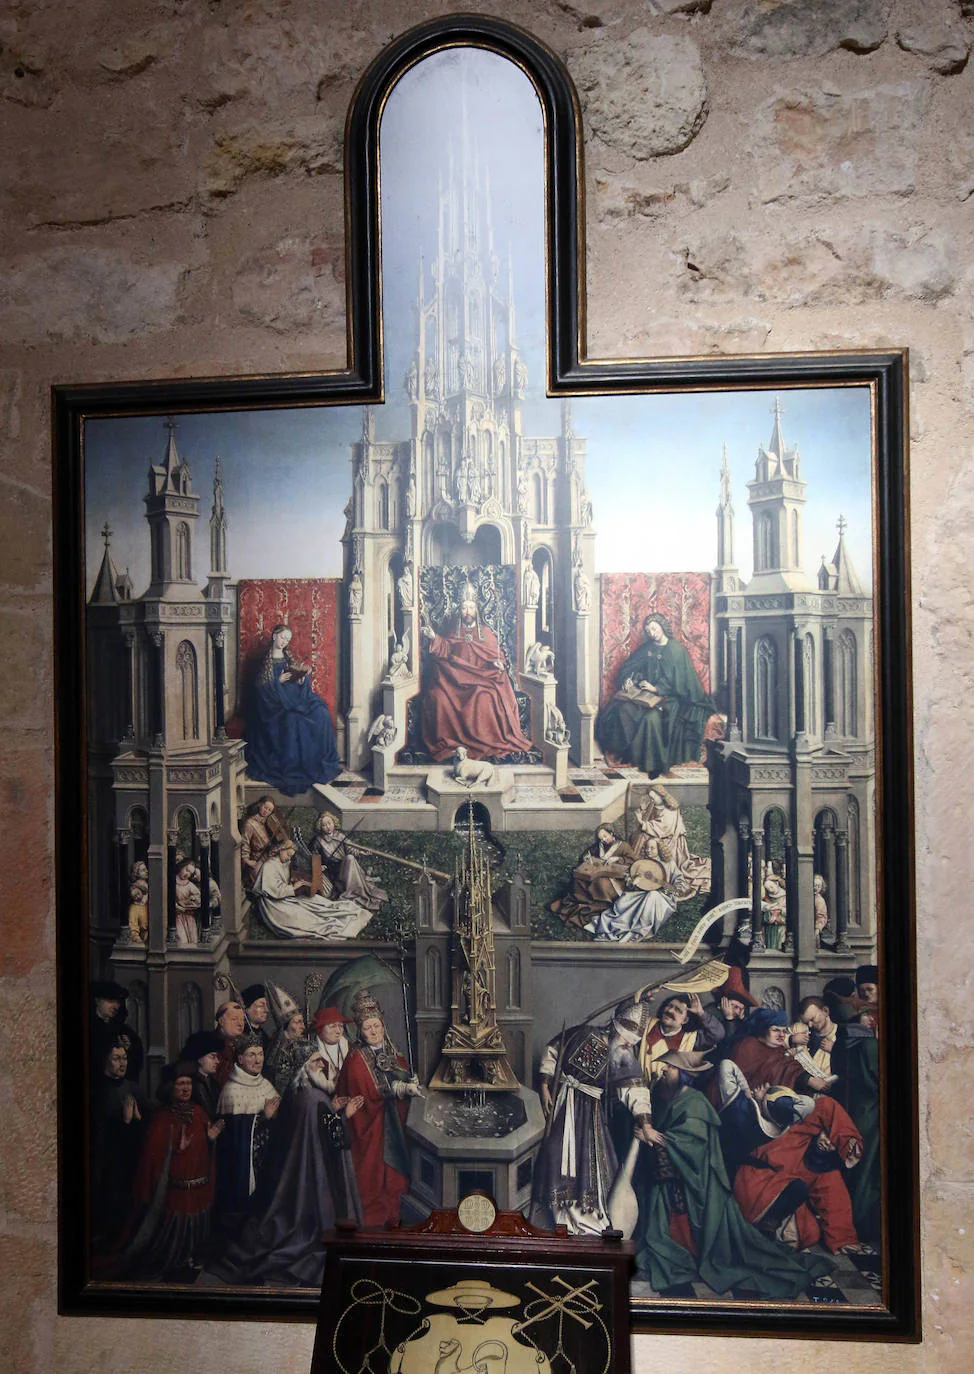 Exposición sobre San Jerónimo.